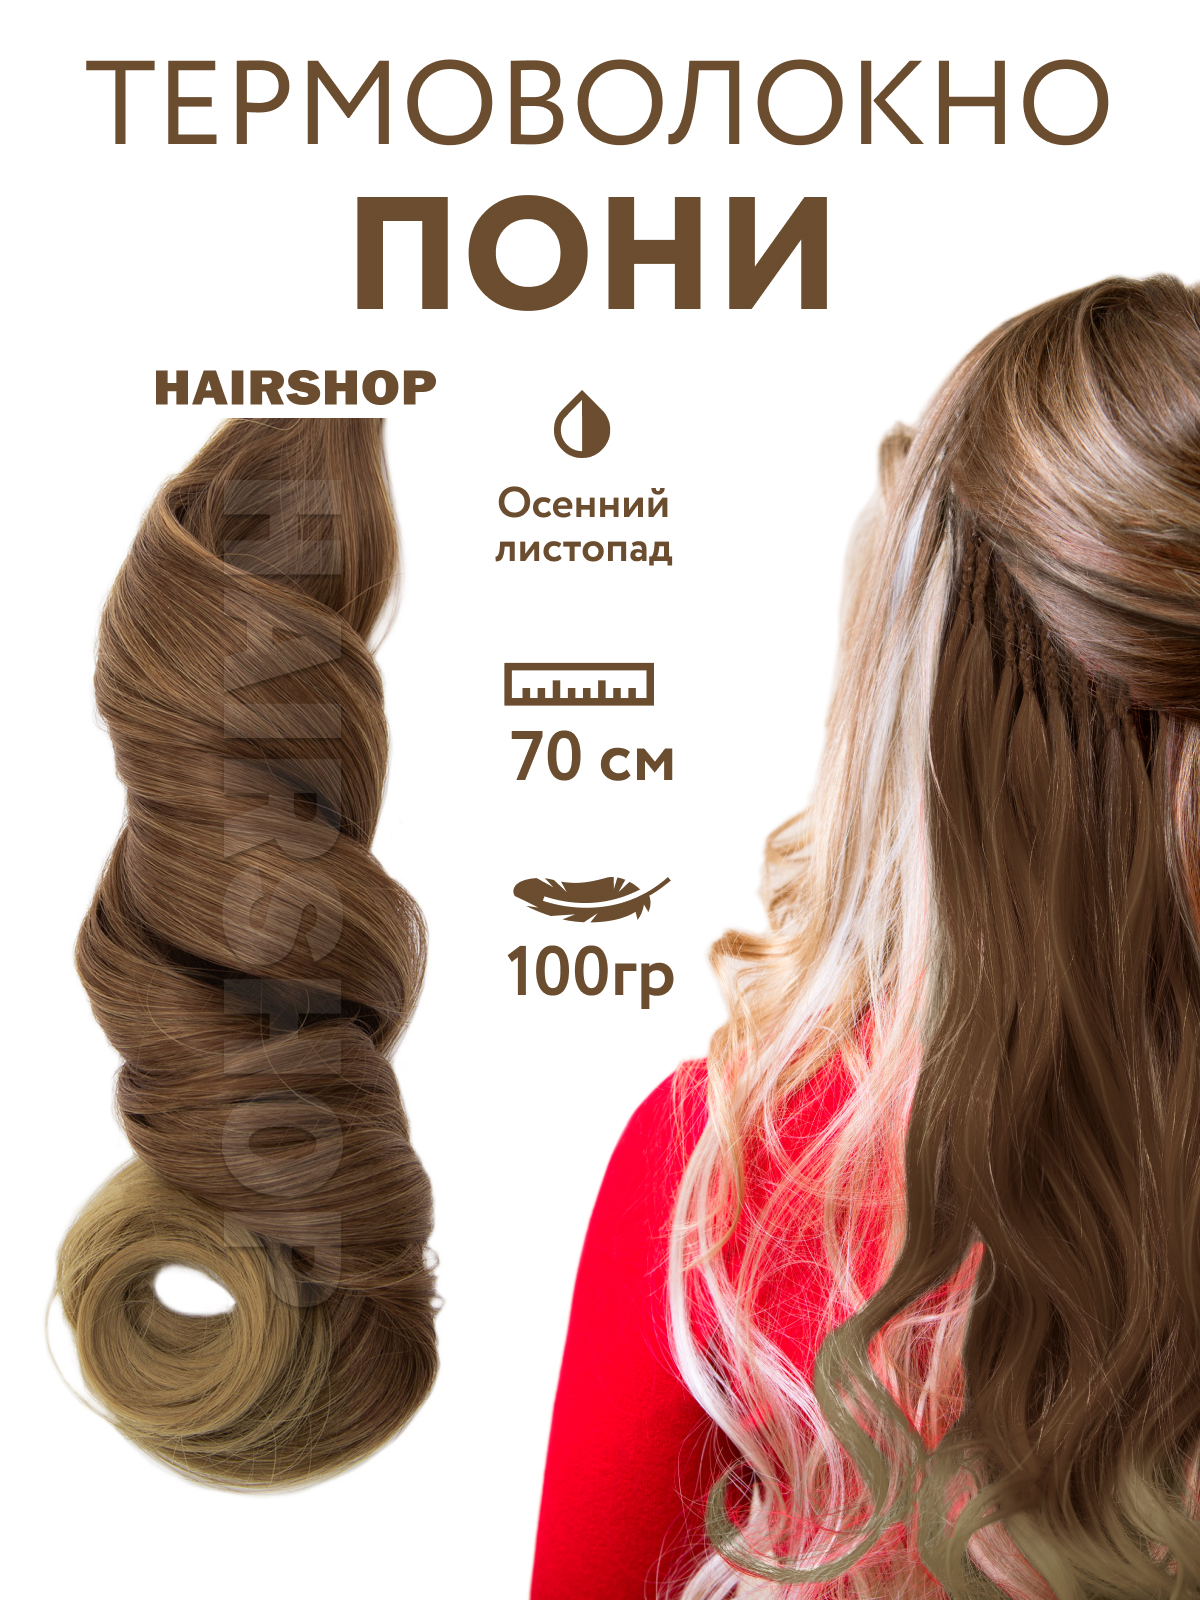 Канекалон HAIRSHOP Пони HairUp для точечного афронаращивания Осенний листопад 1,4м термоволокно hairshop пони hairup термо осенний листопад 140см 100г